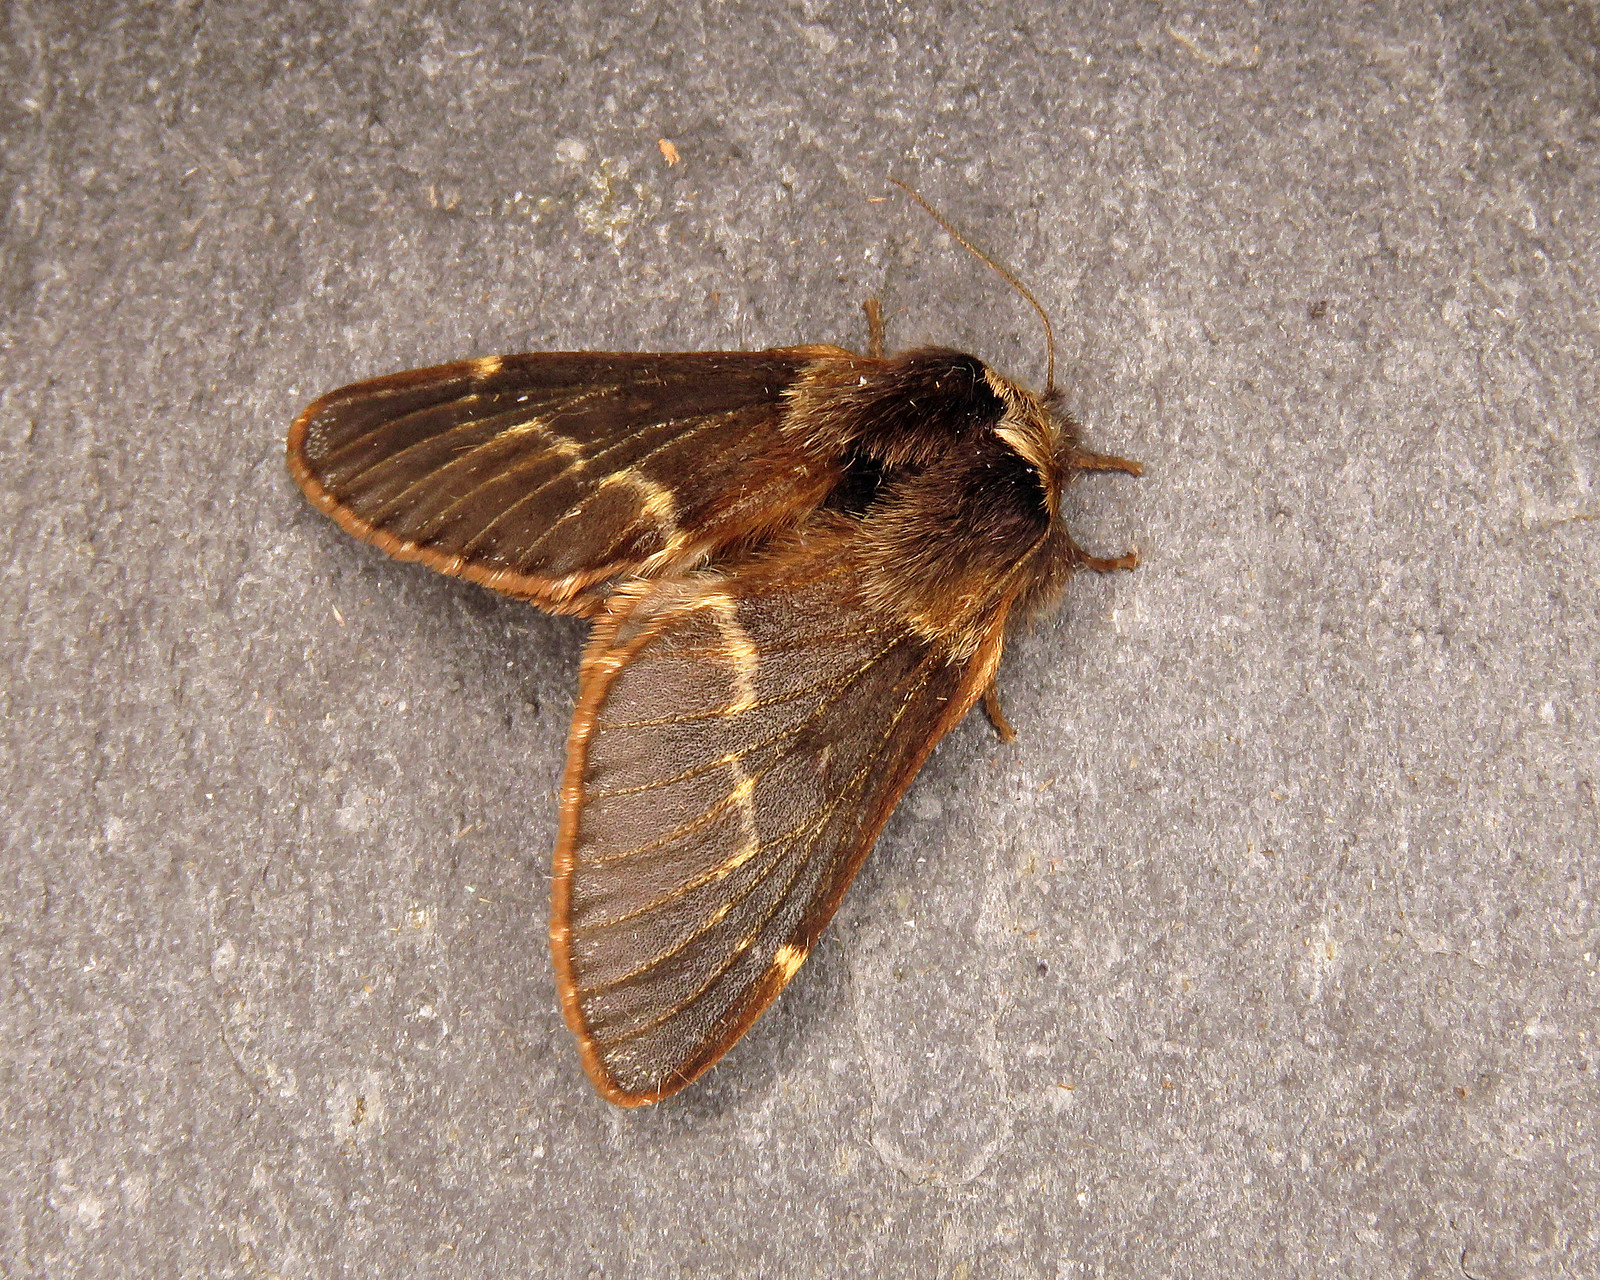 66.001 December Moth - Poecilocampa populi